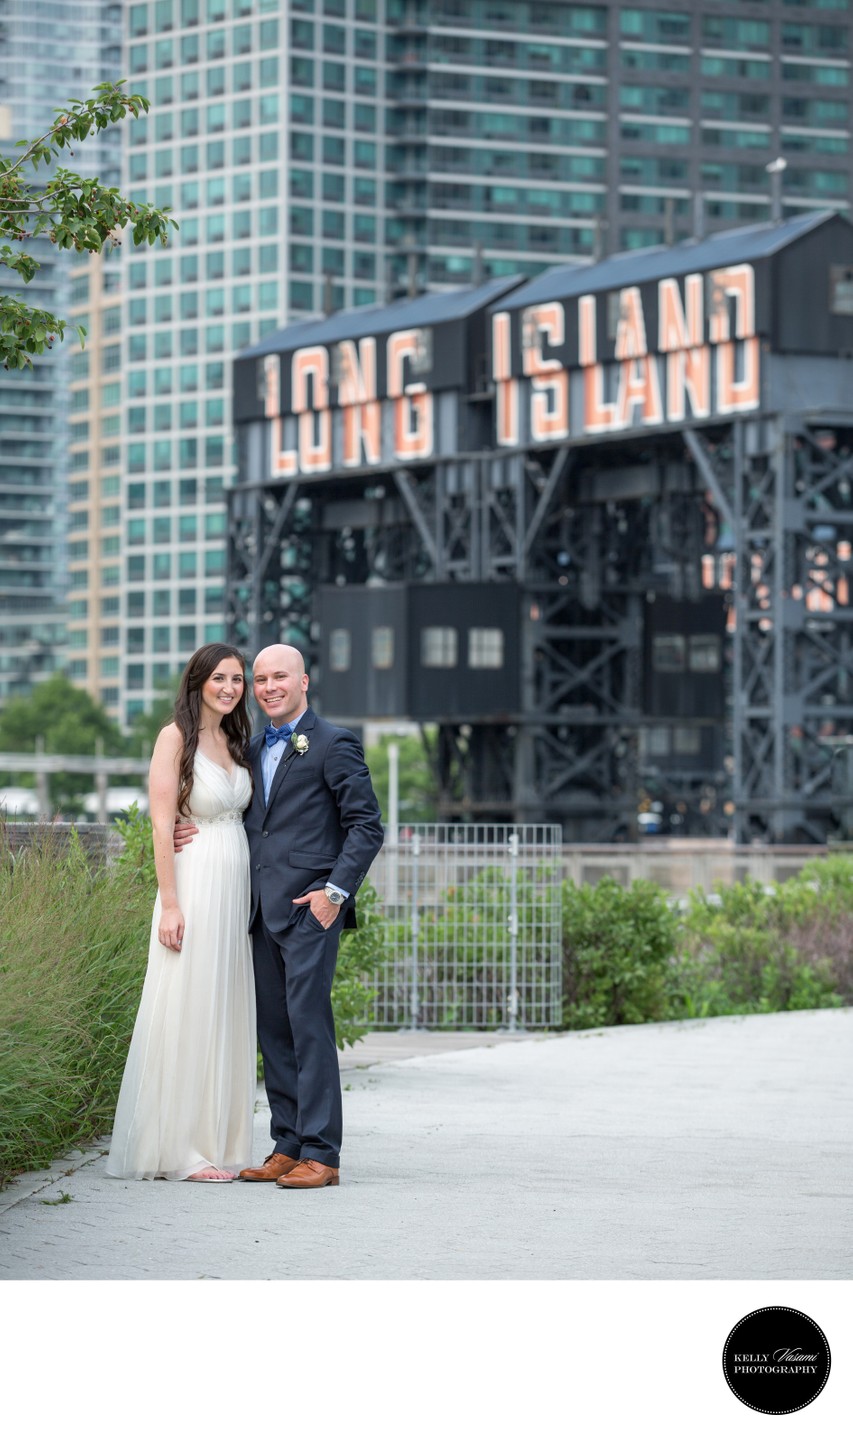 Long Island City Sign | Wedding Couple Photos